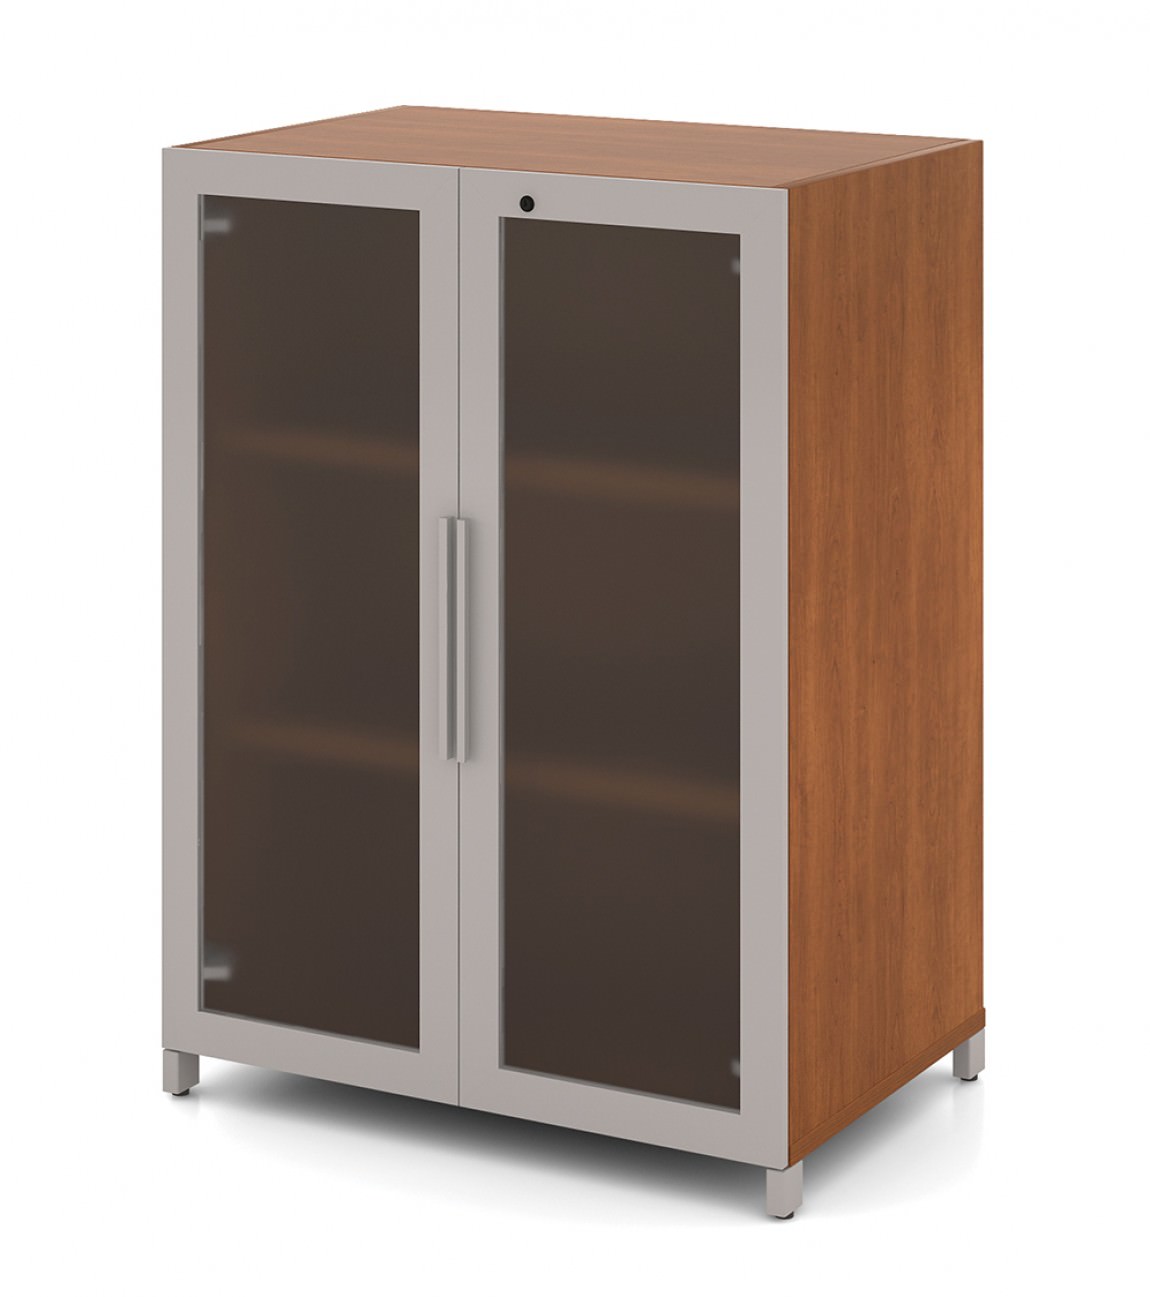 https://madisonliquidators.com/images/p/1150/16834-2-door-storage-cabinet-1.jpg